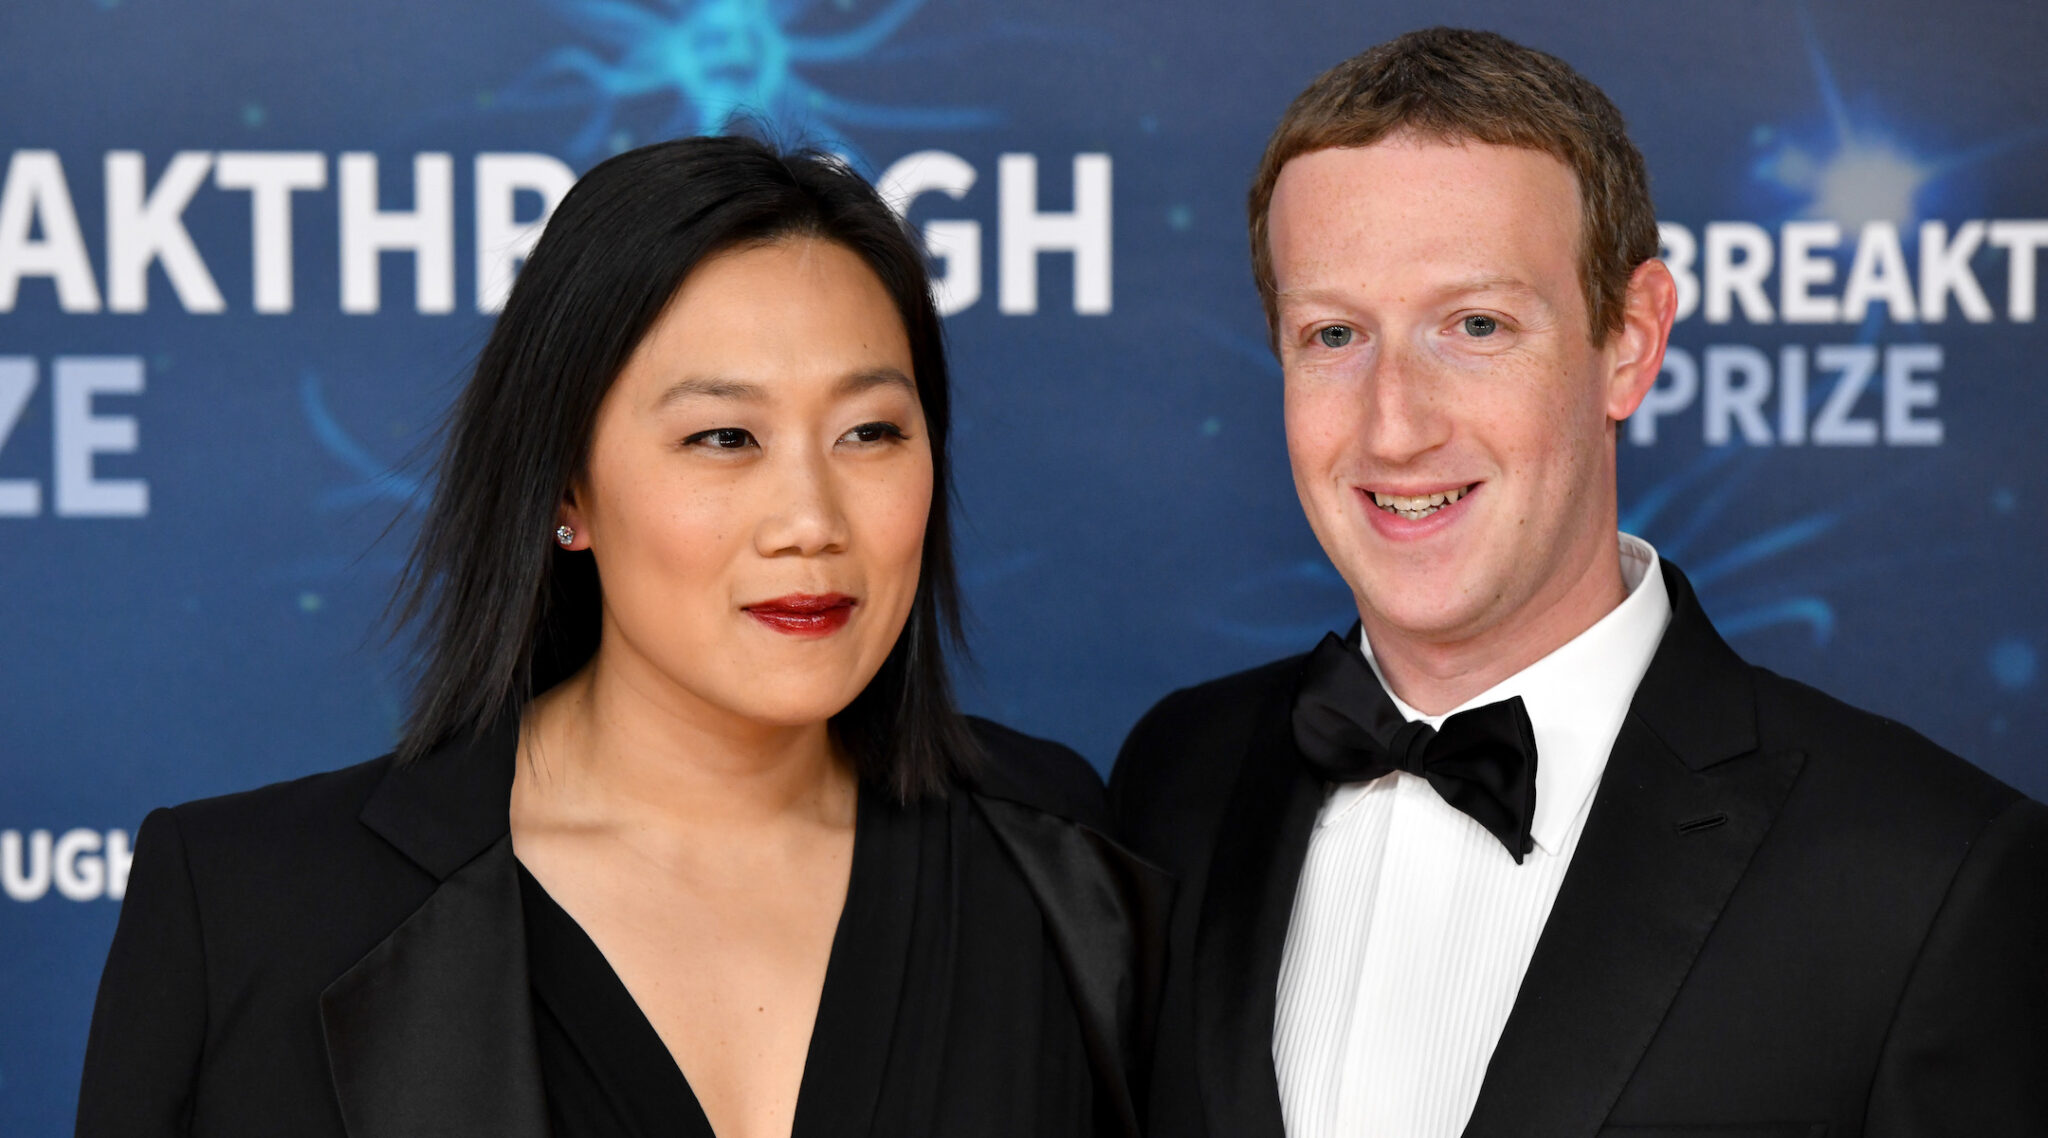 Mark Zuckerberg és felesége 1,3 millió dollárt ad 11 zsidó csoportnak